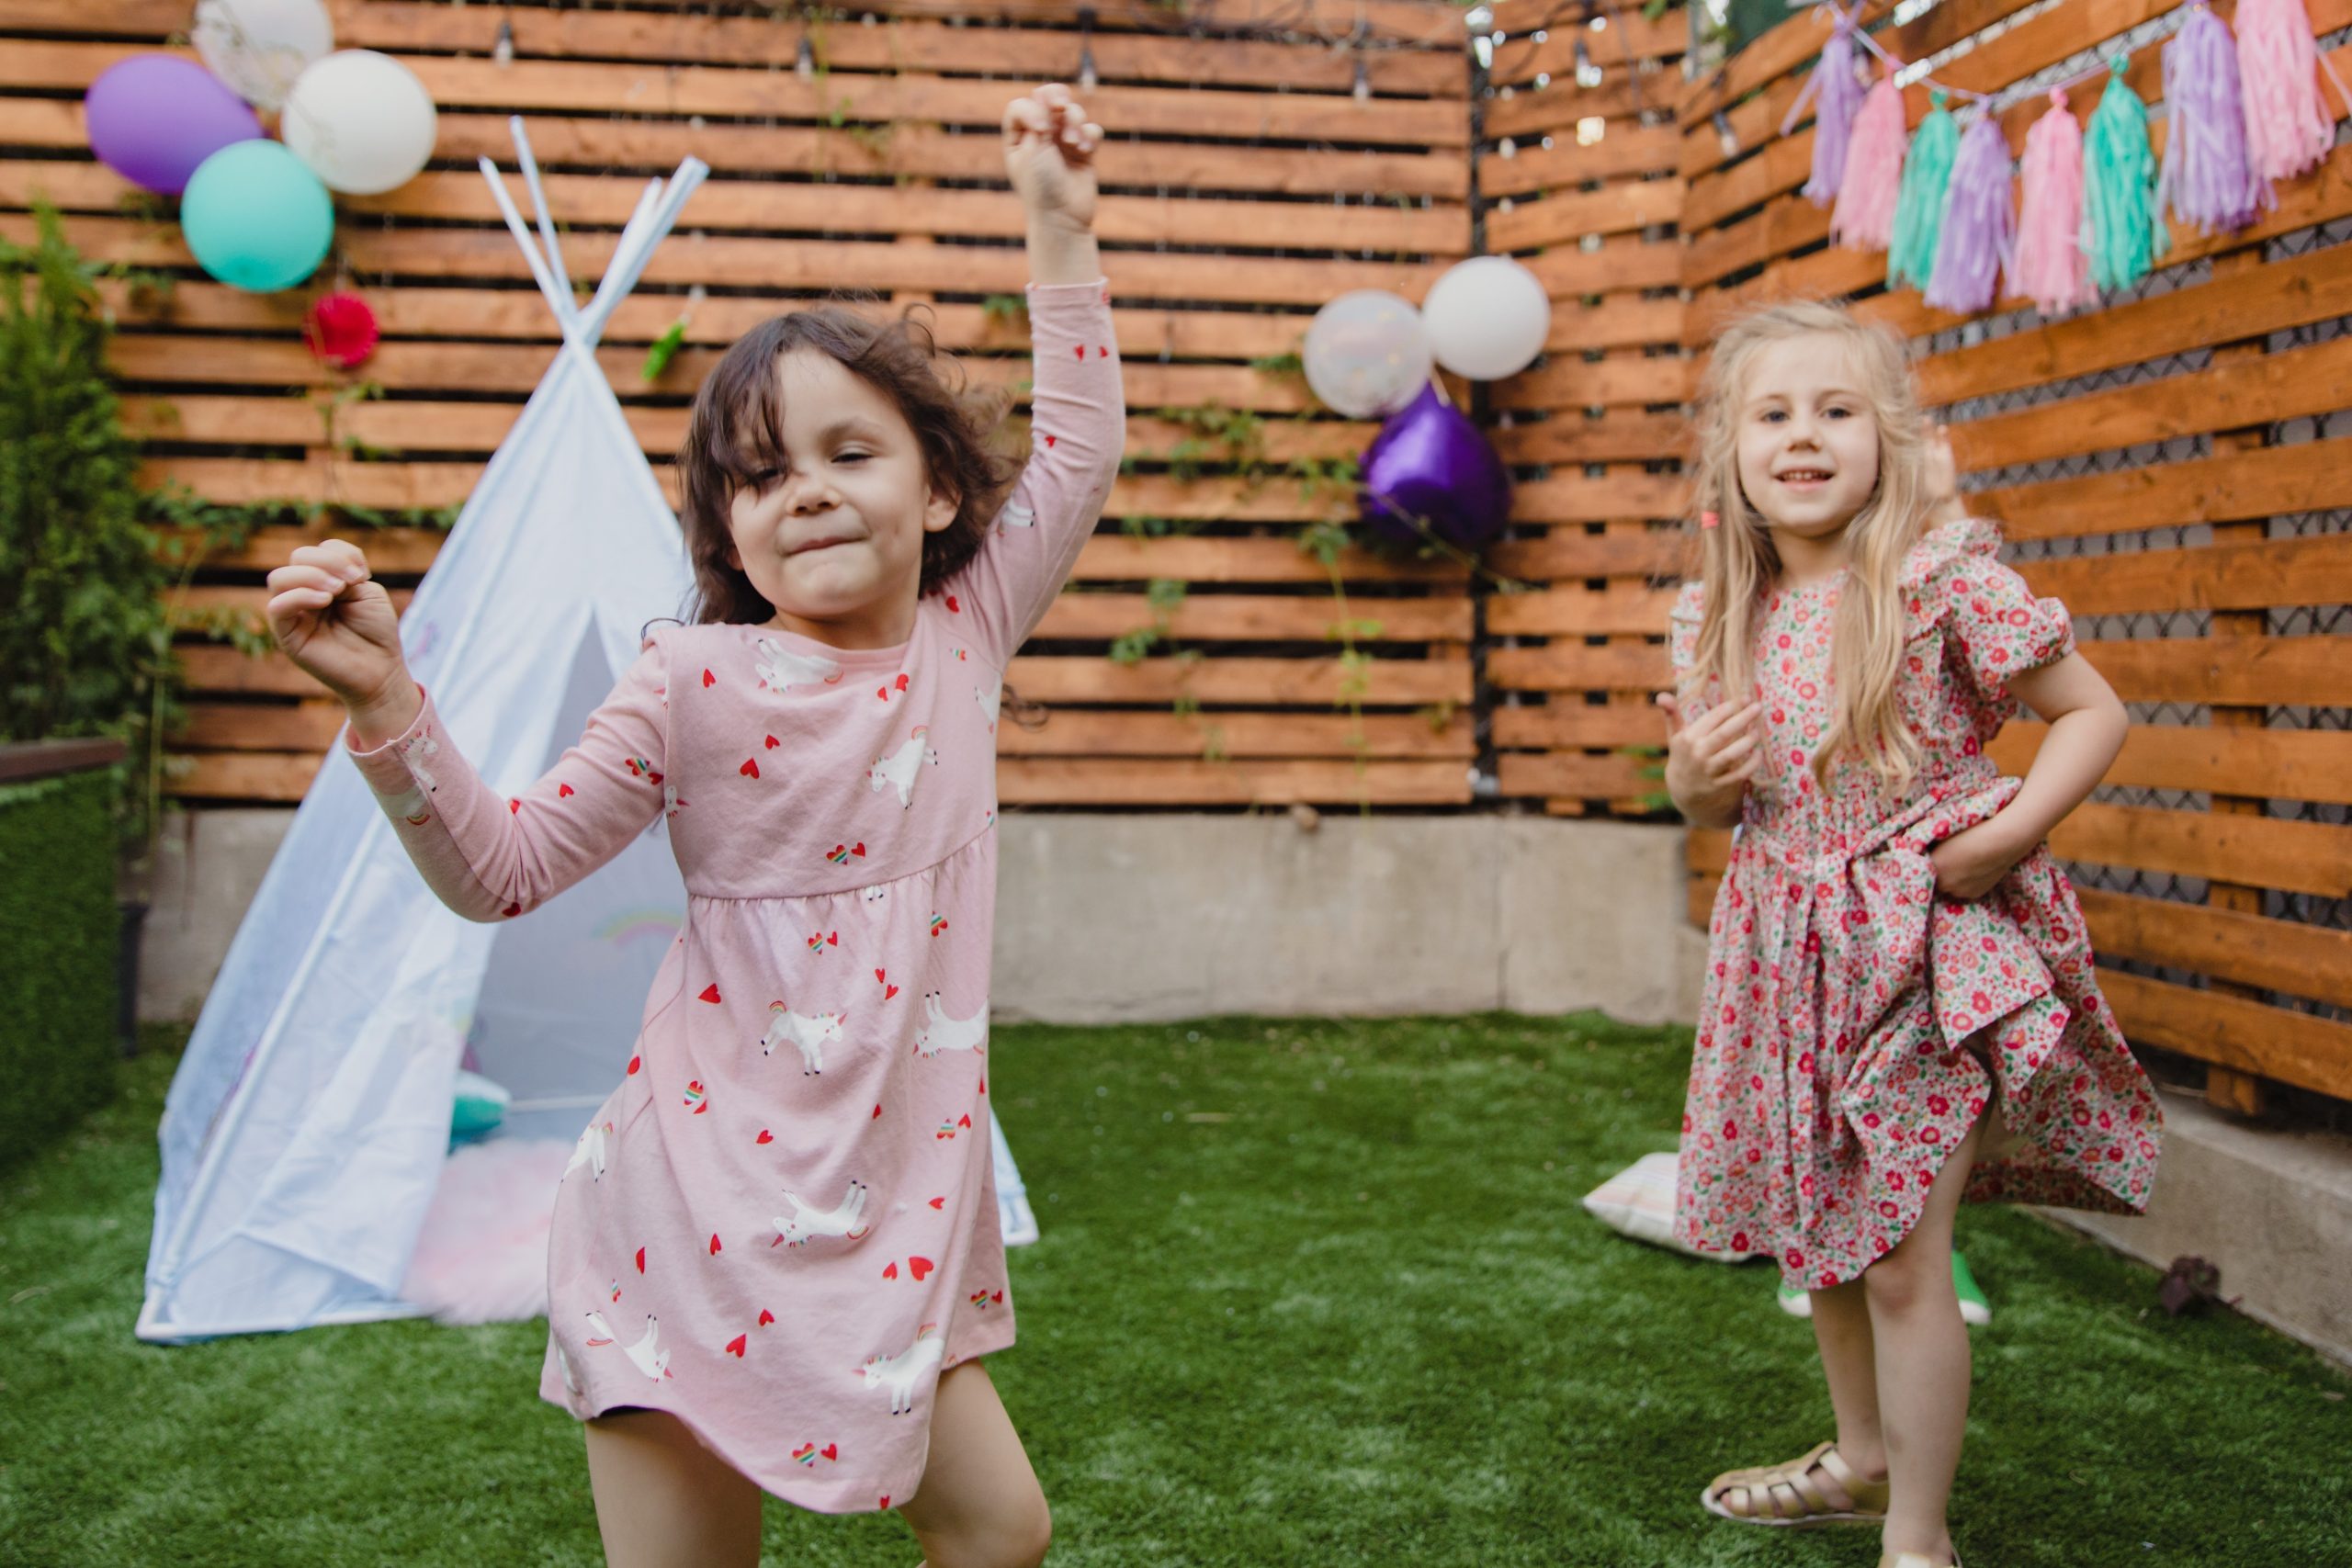 Dans un jardin privé bordé de bois, deux petites filles dansent. Derrière elles, un tipi blanc.